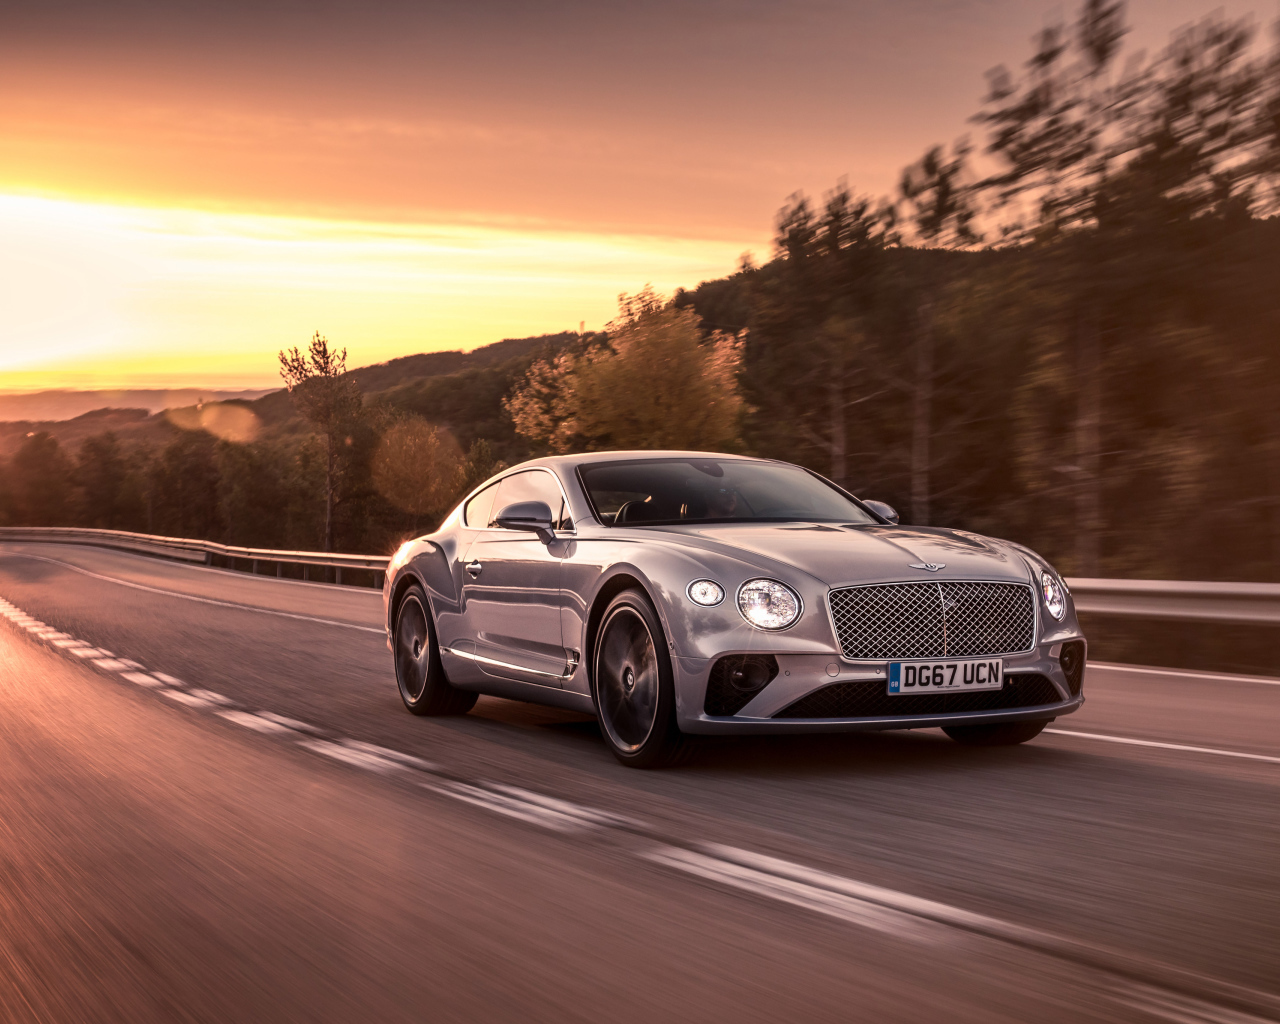 Серебристый автомобиль Bentley Continental GT 2018 года на фоне заката